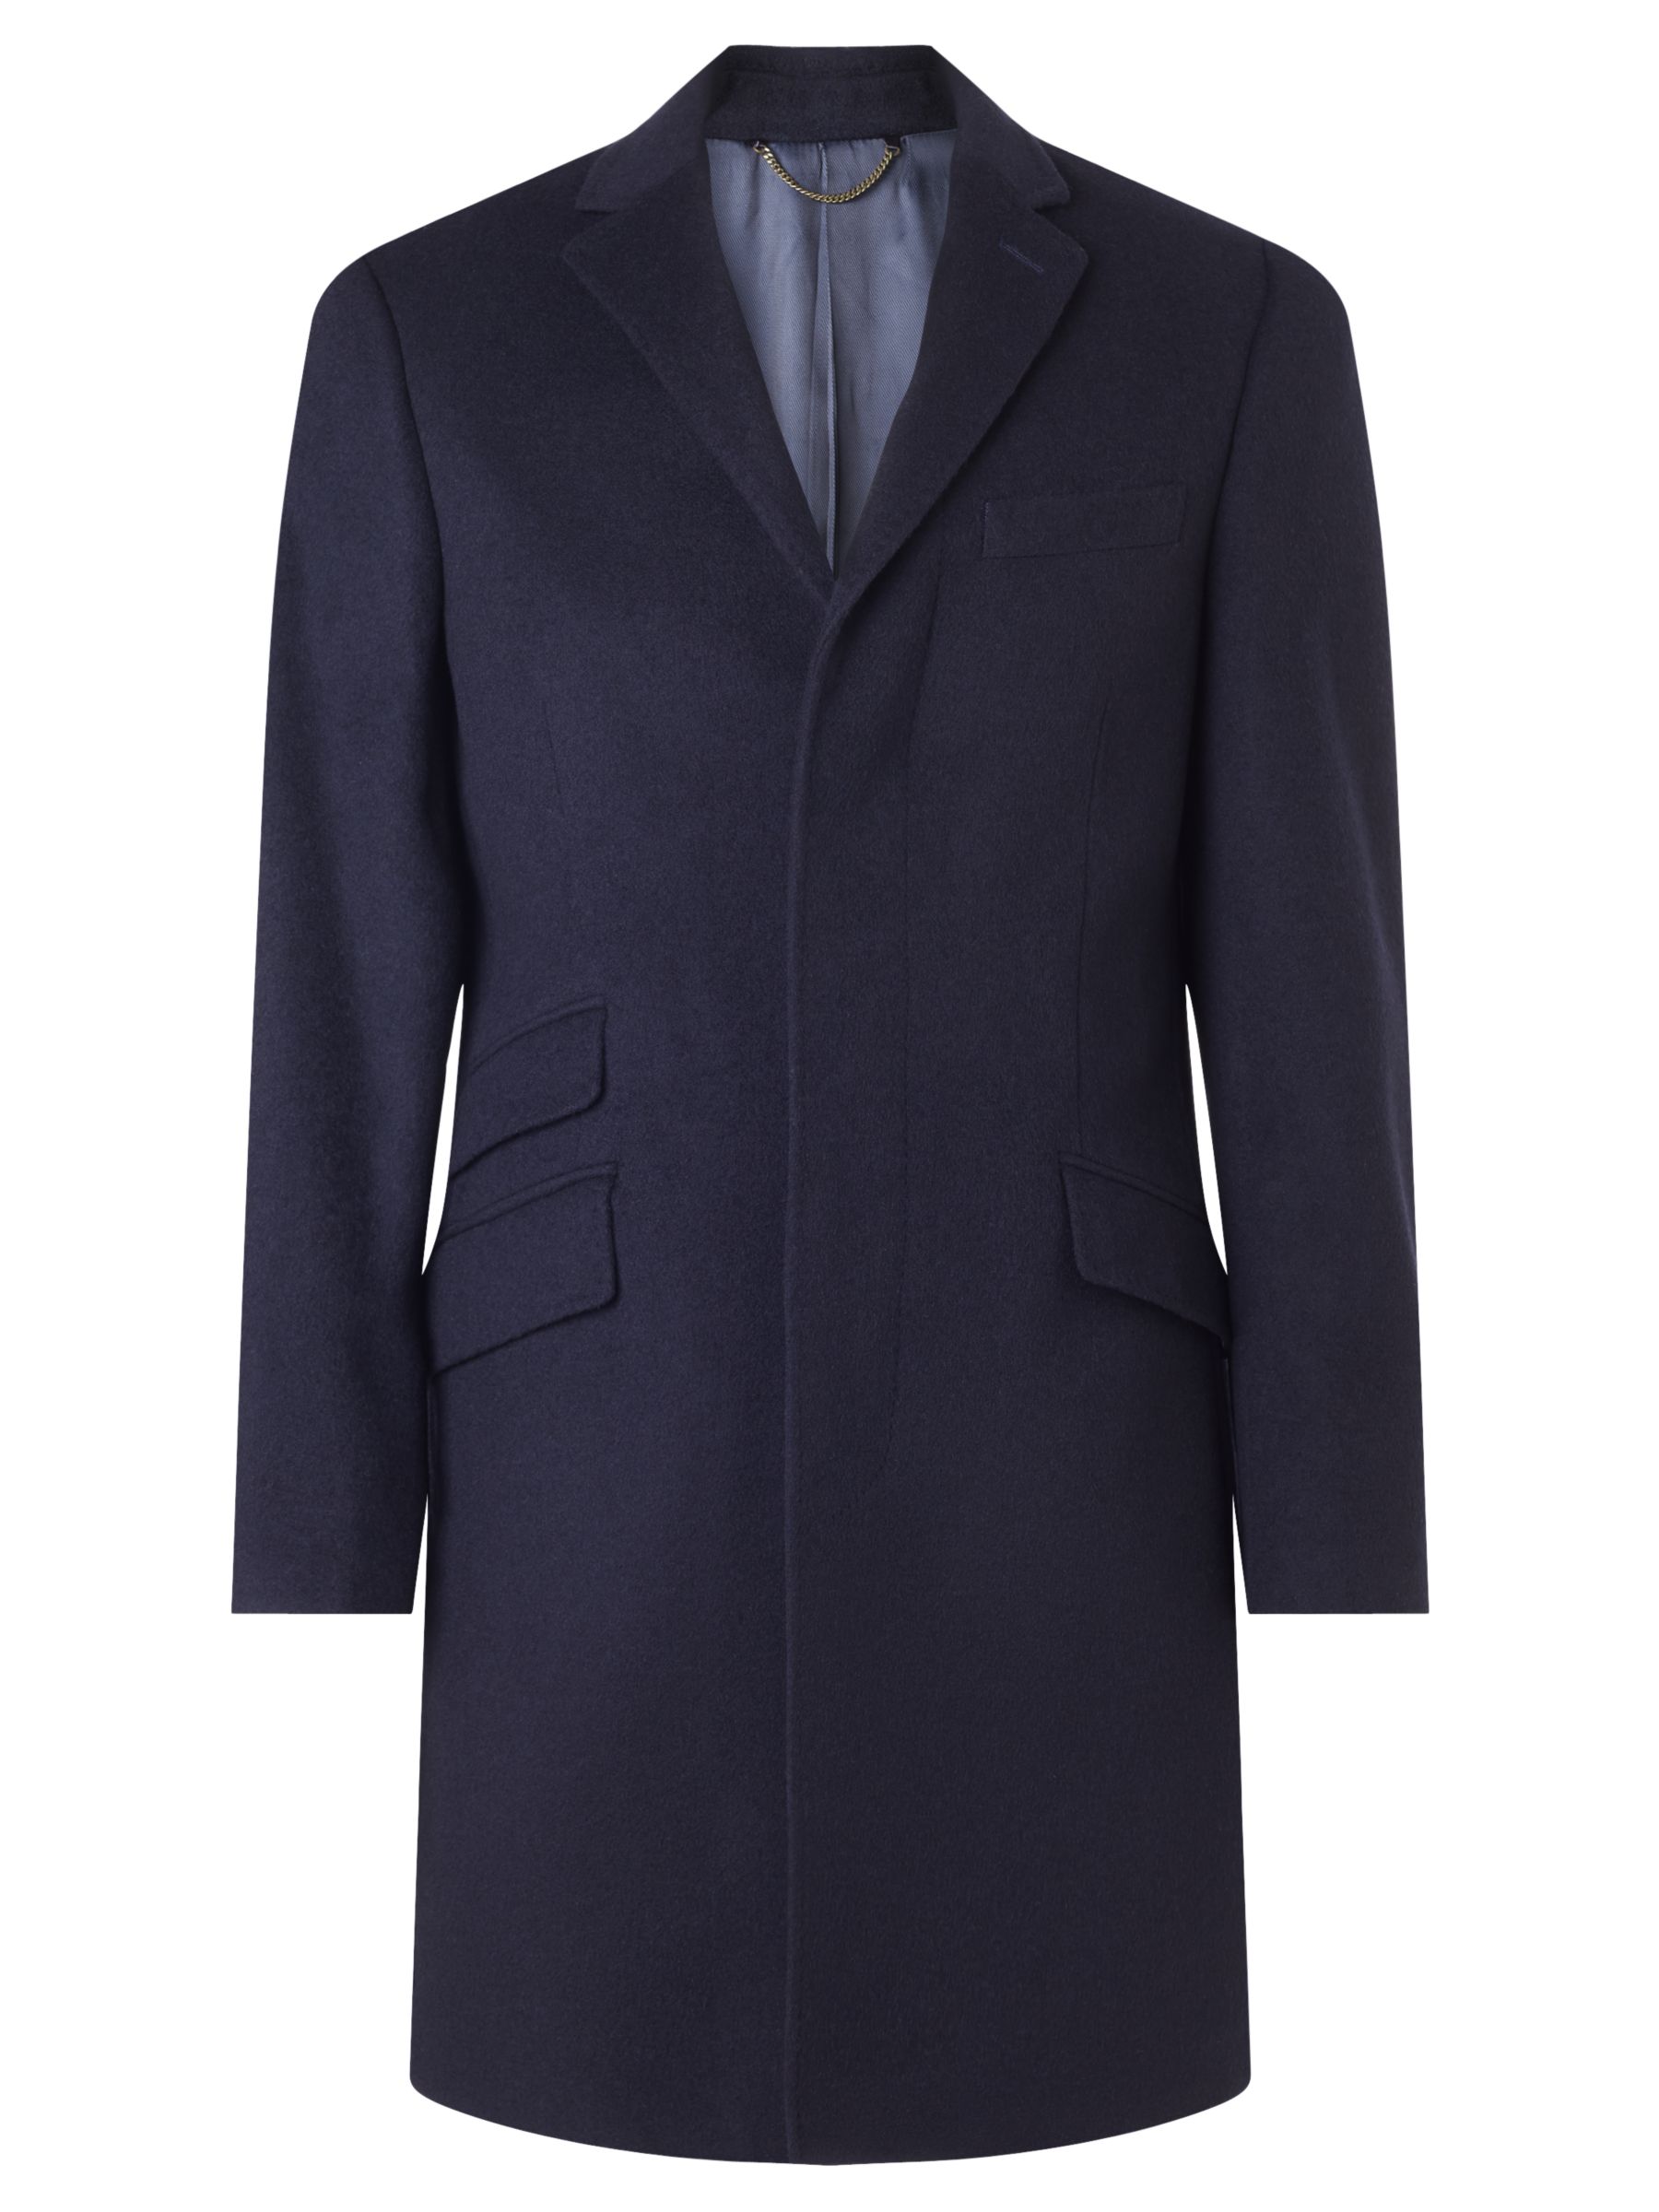 Buy John Lewis Wool Blend Epsom Overcoat | John Lewis